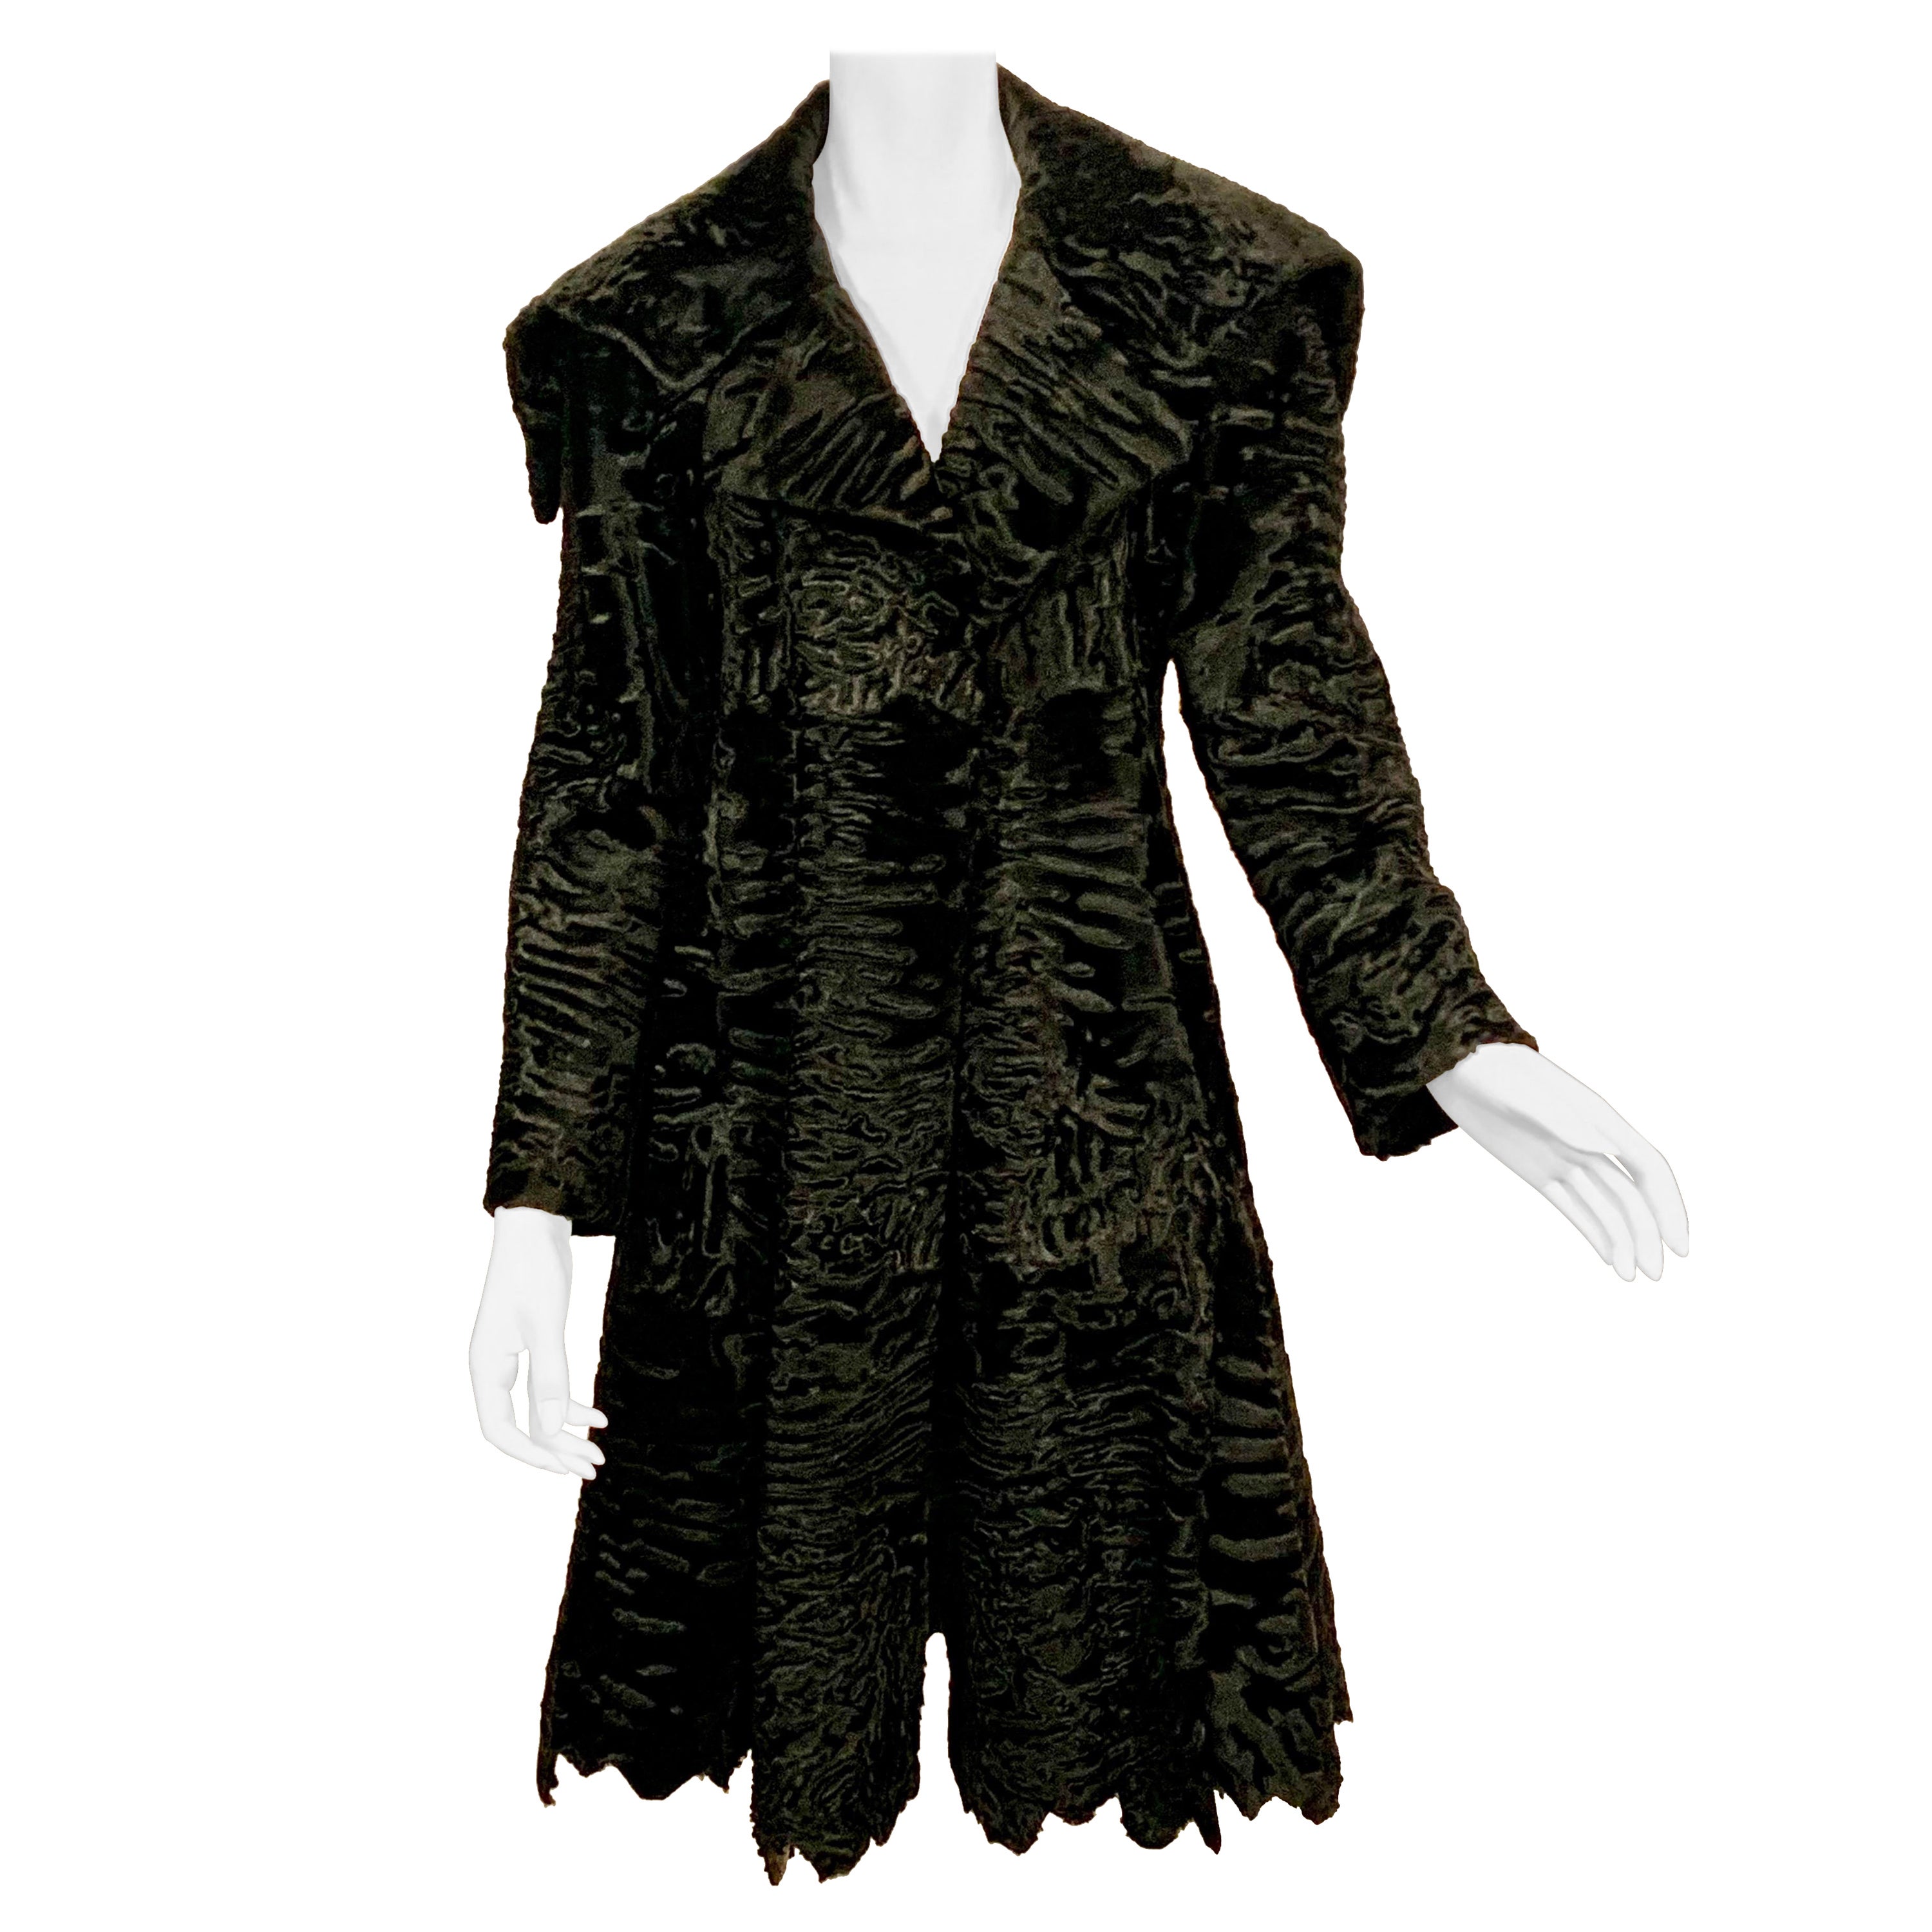 J. Mendel Black Swakara Coat Jagged Edge Hemline New Original Price Tag $23, 500